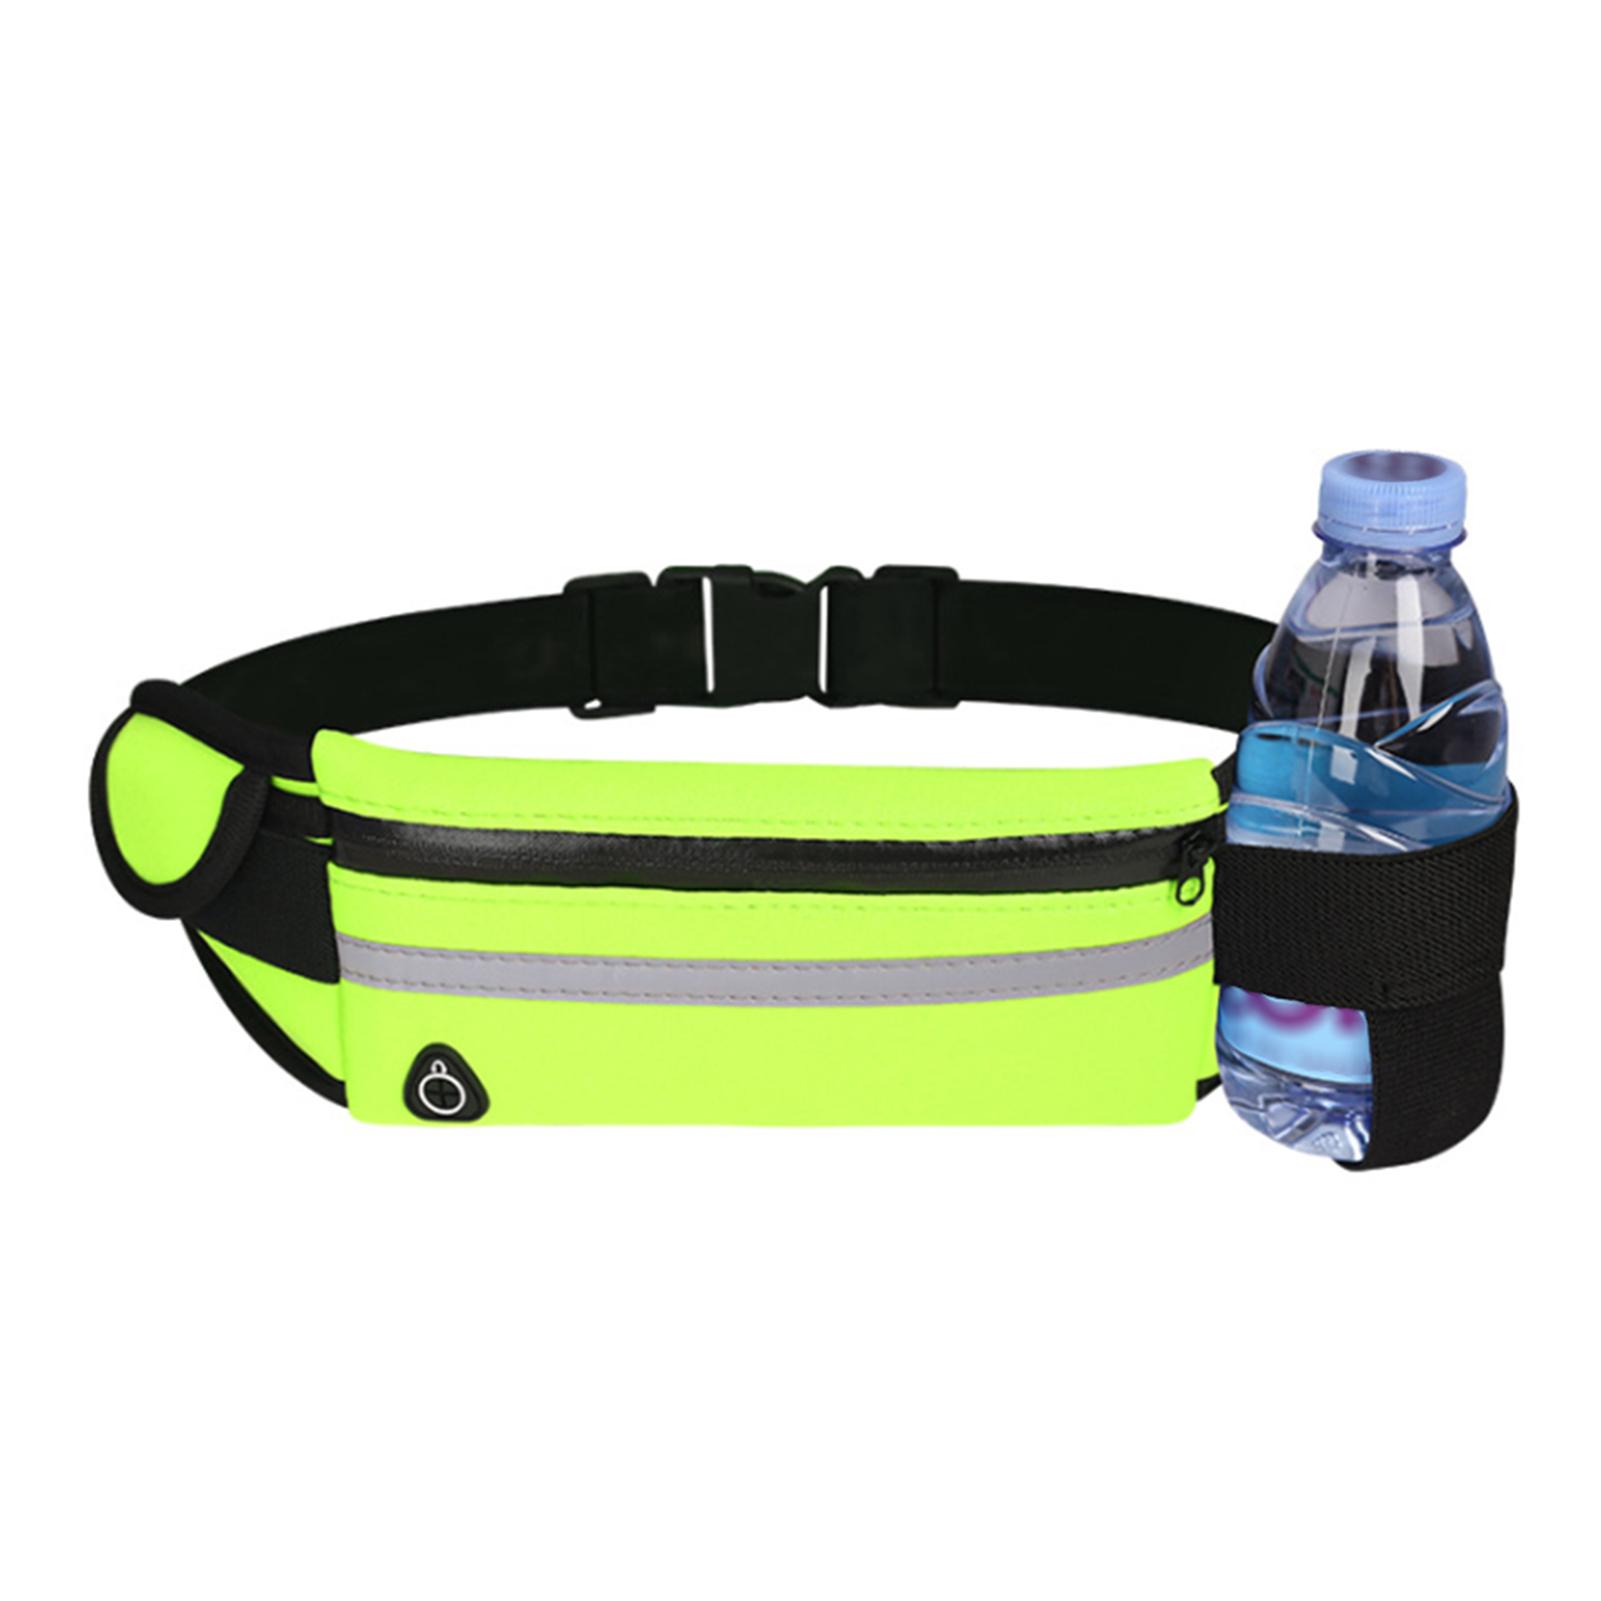 Túi đựng điện thoại đeo lưng chống nước đa chức năng để tập luyện ngoài trời-Màu Trời xanh